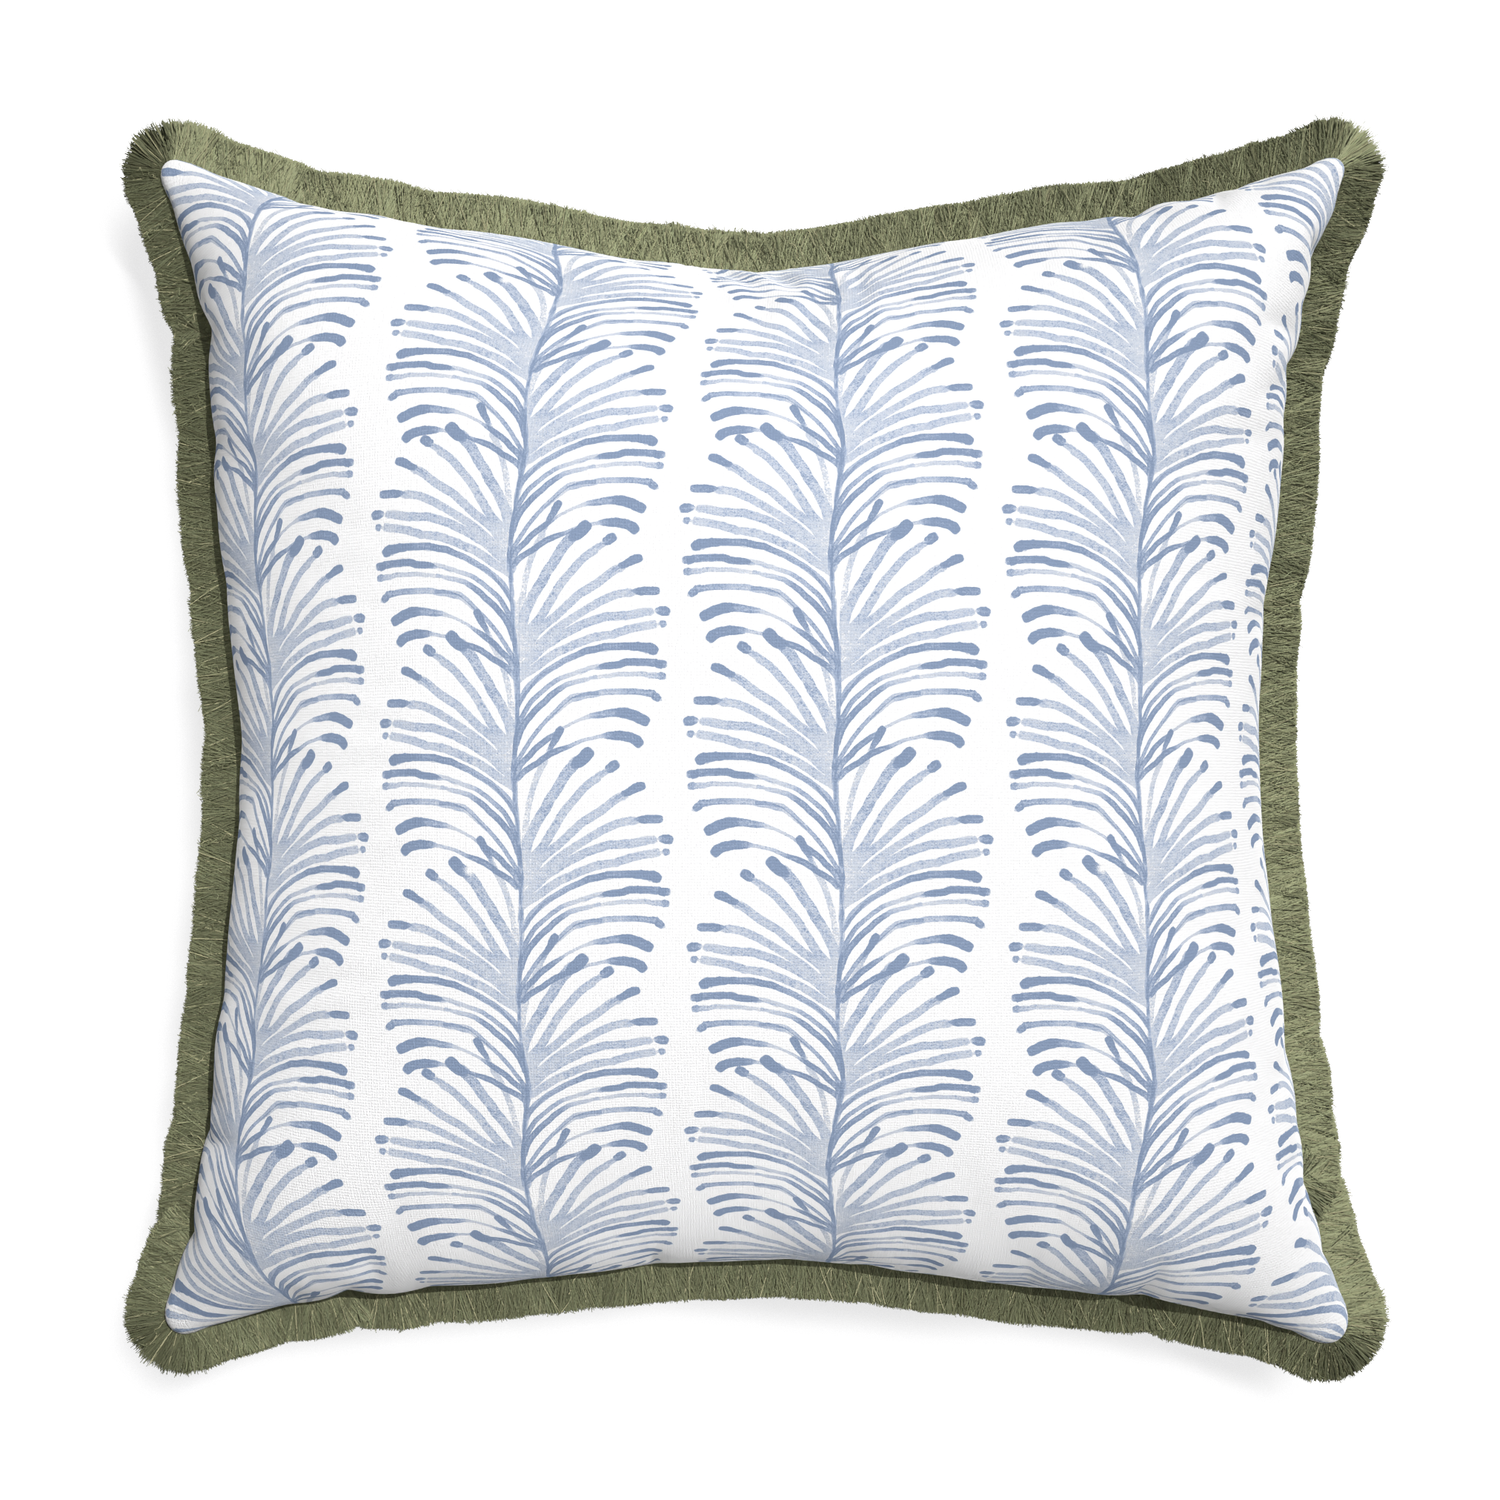 Euro-sham emma sky custom pillow with sage fringe on white background